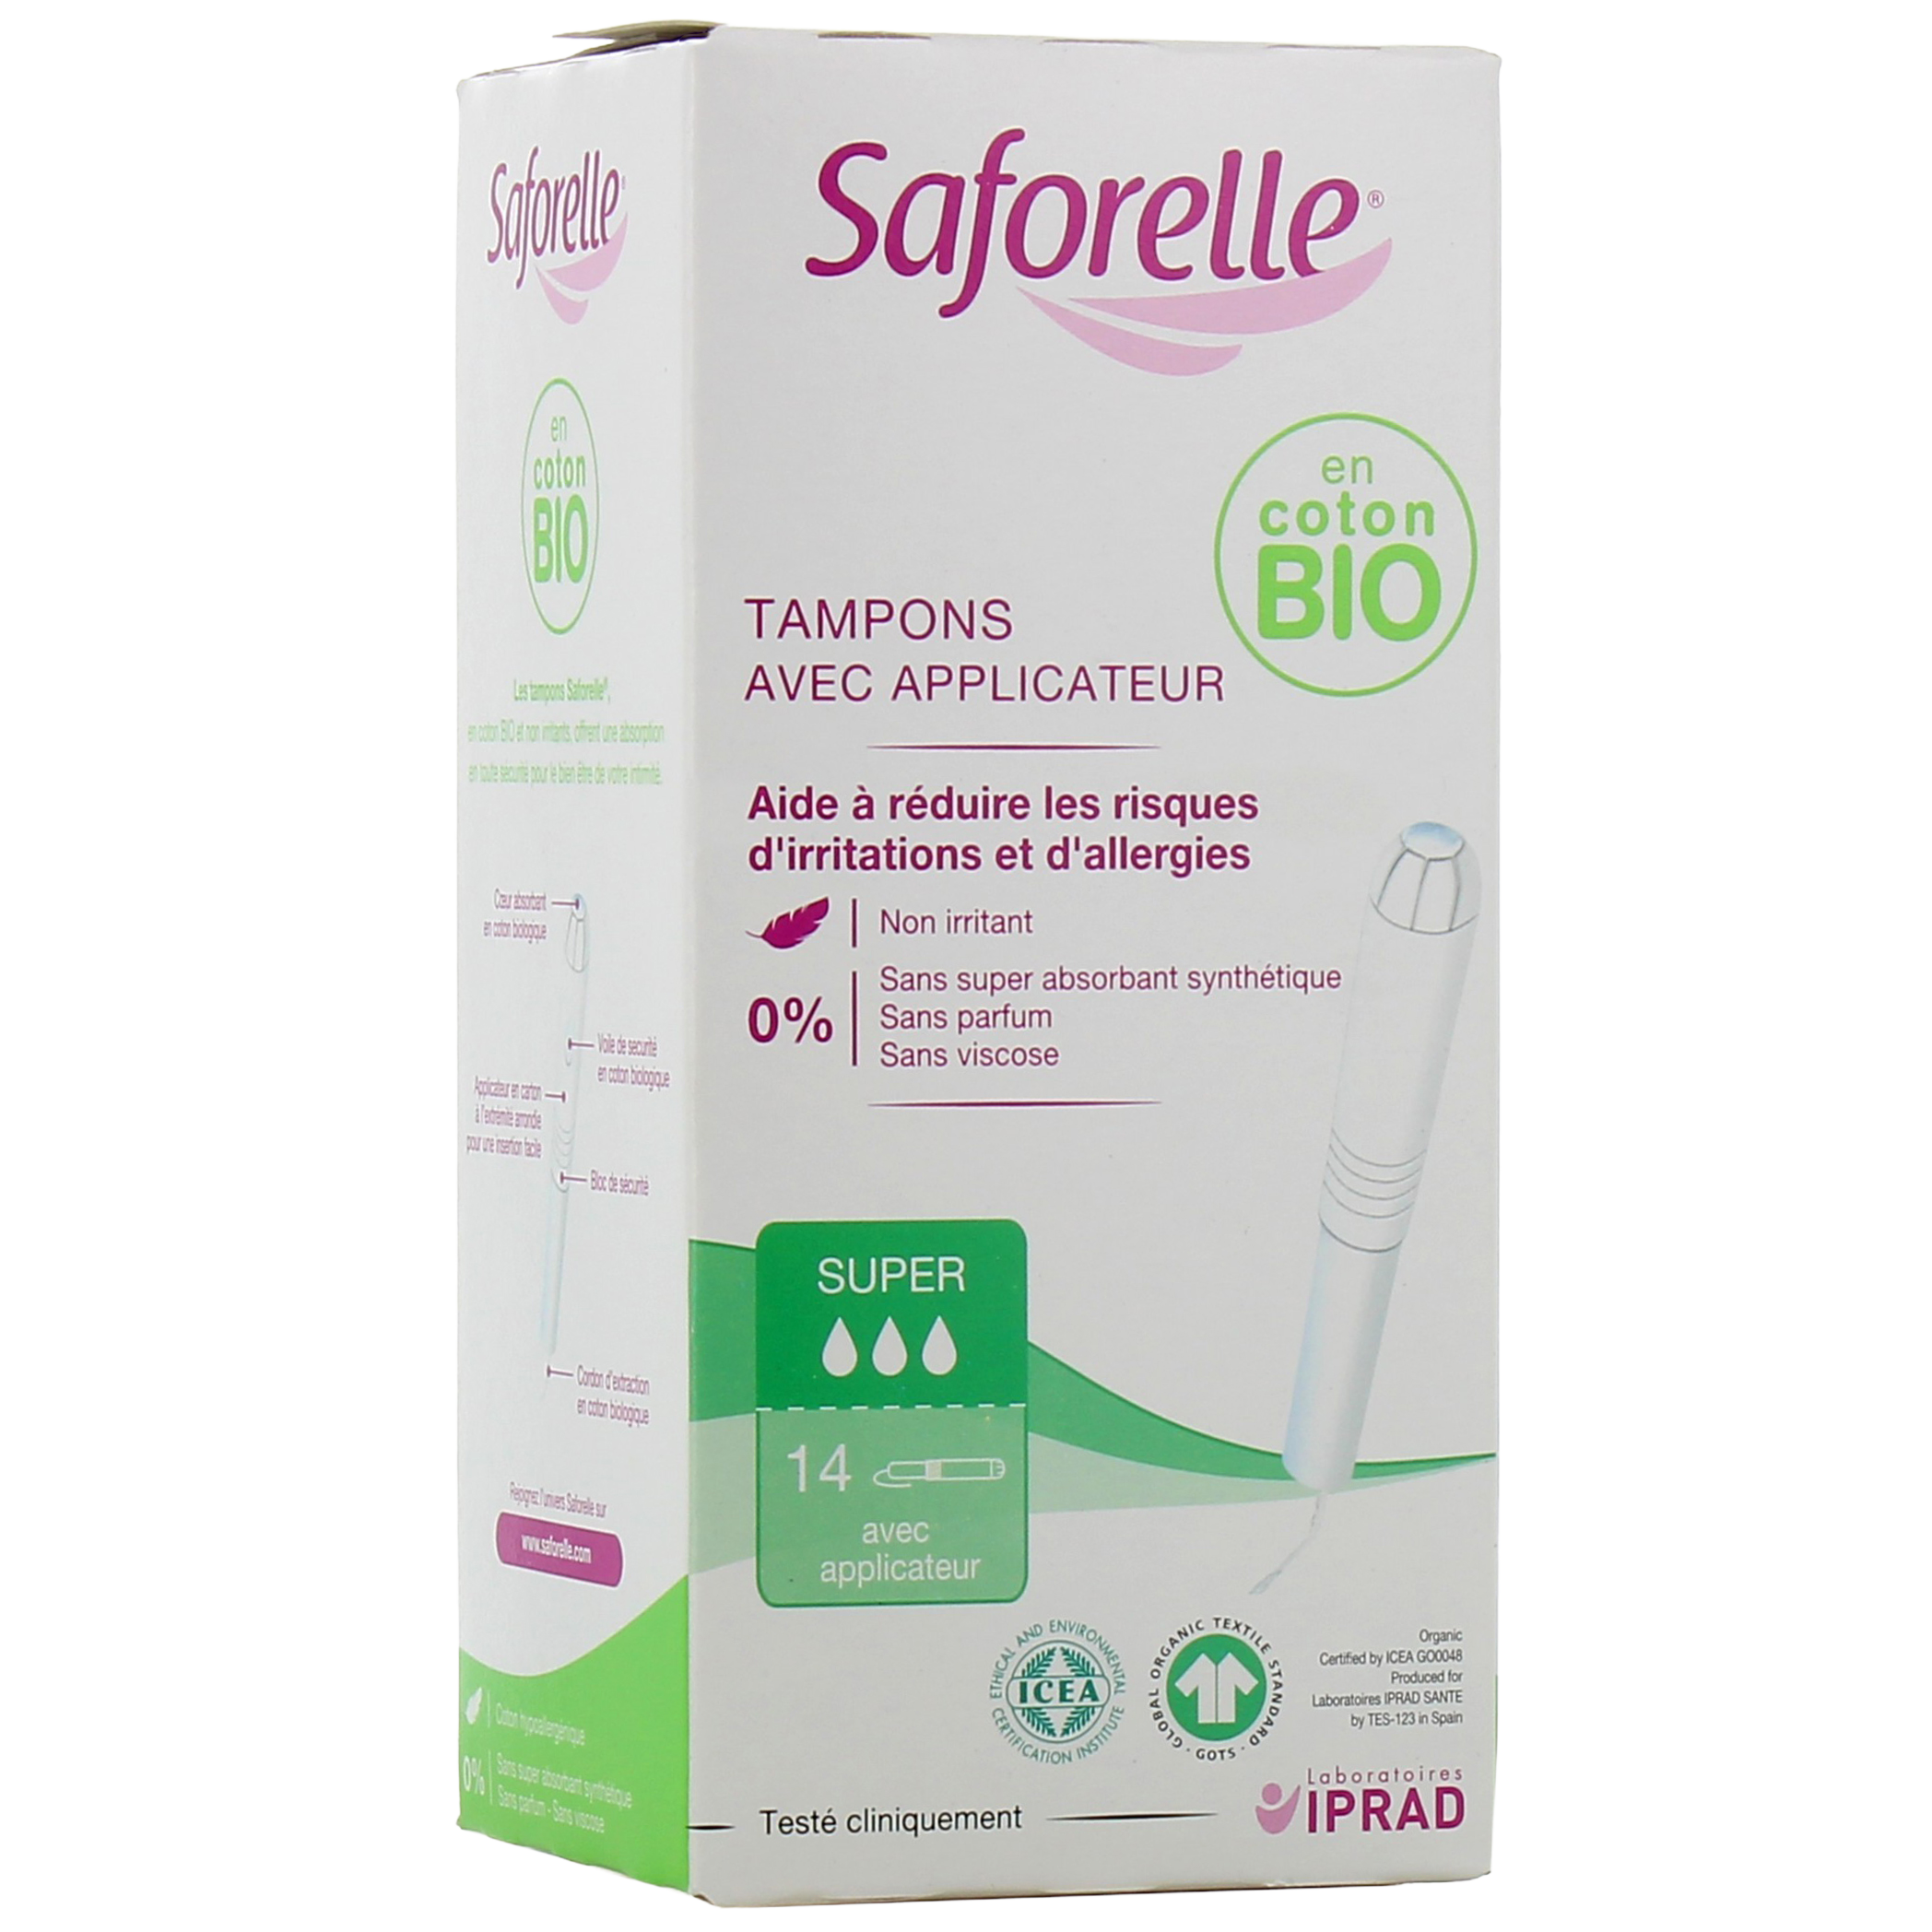 Tampons avec applicateur en coton Bio Saforelle